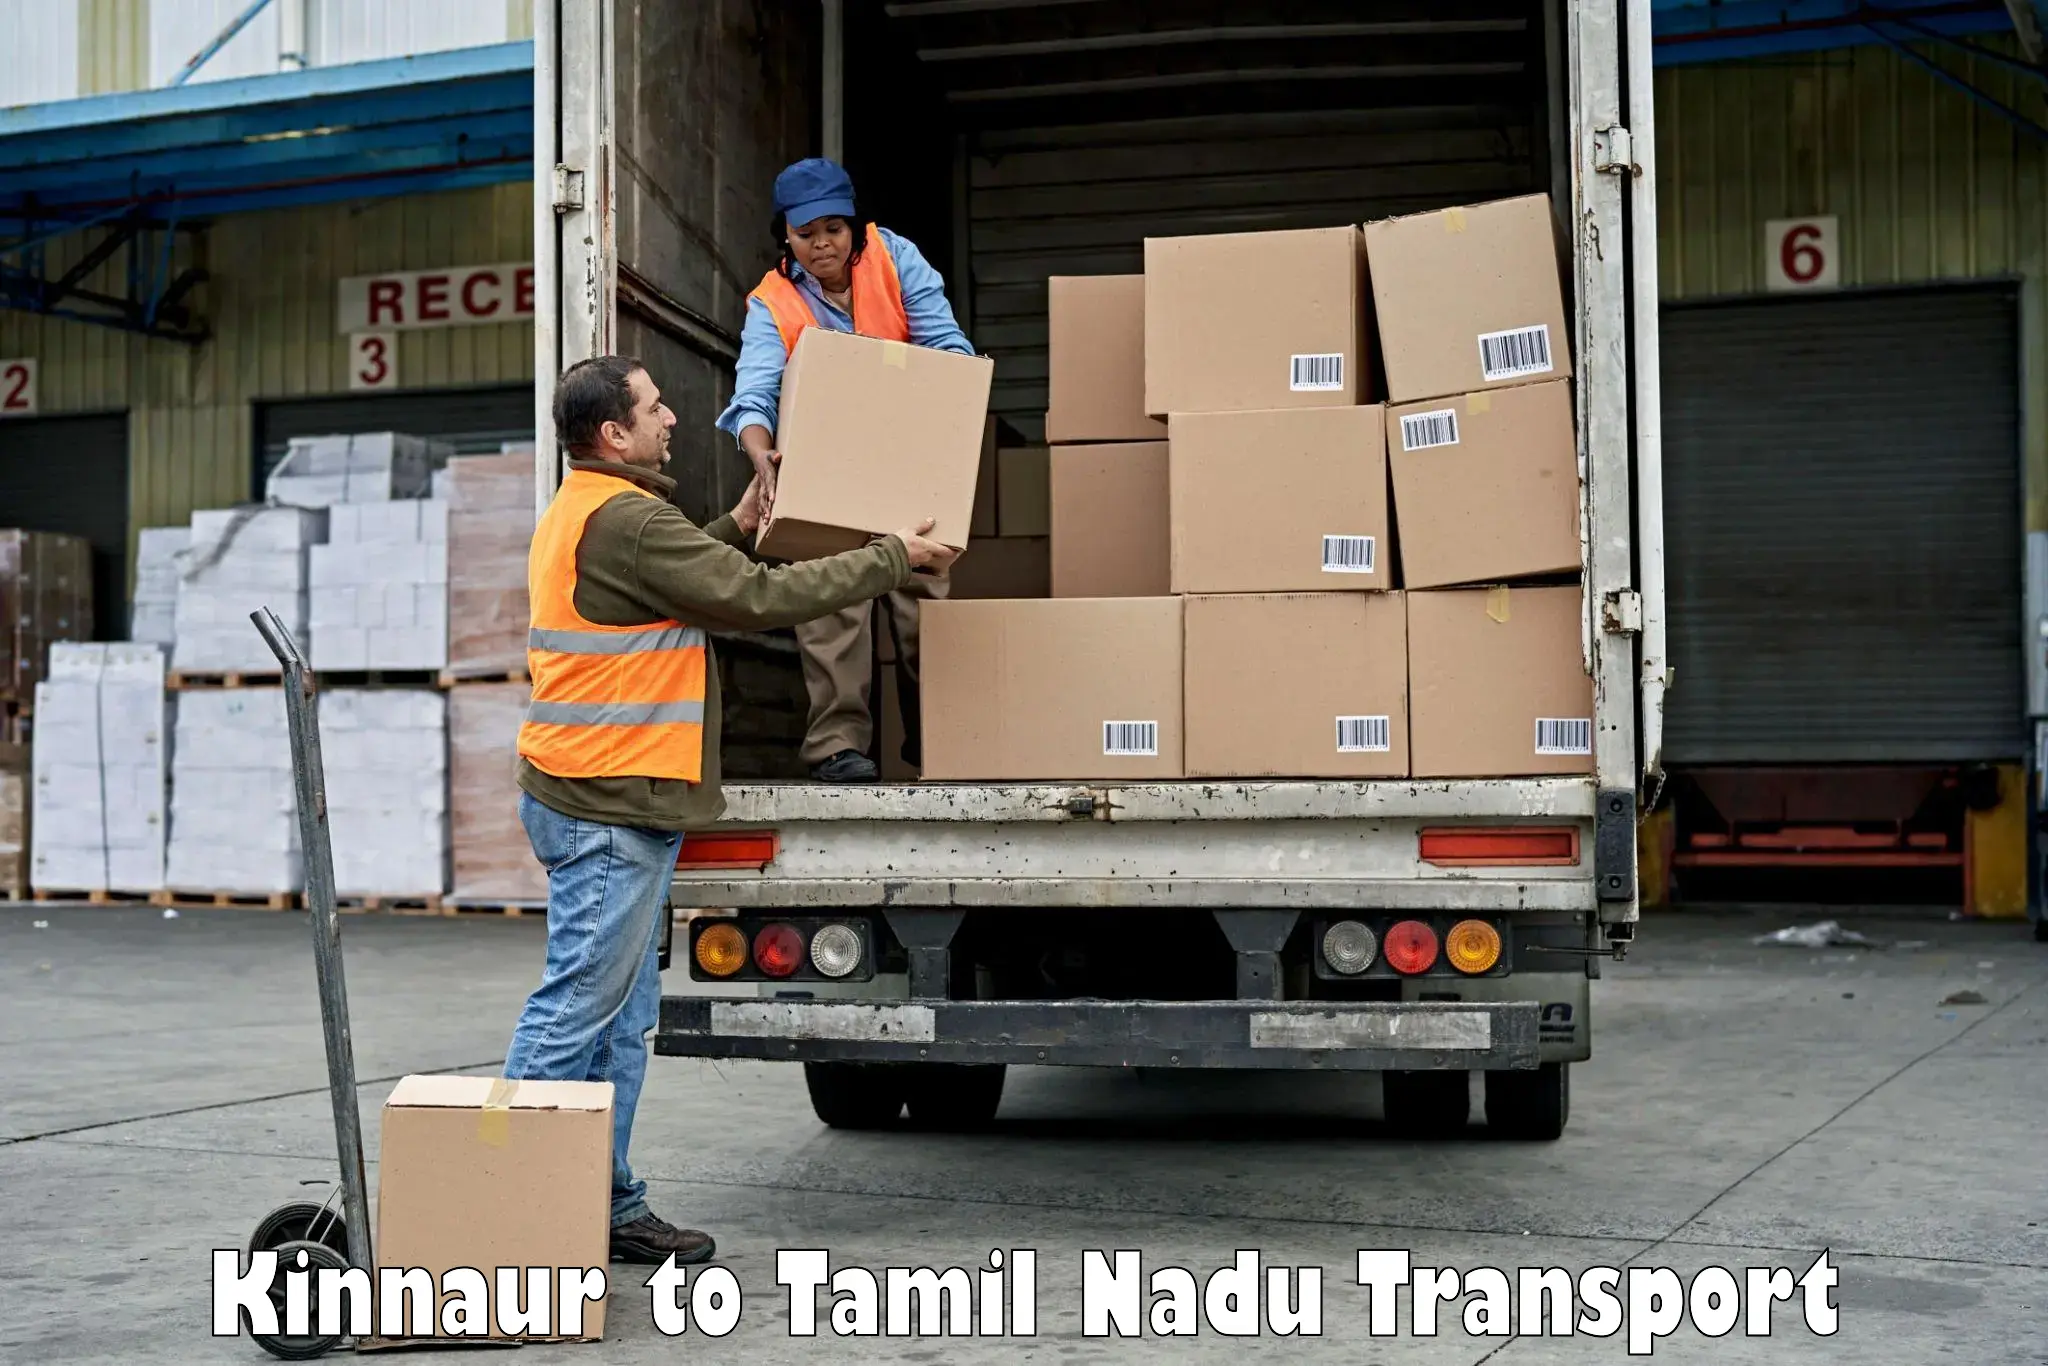 Bike shipping service Kinnaur to Udumalaipettai